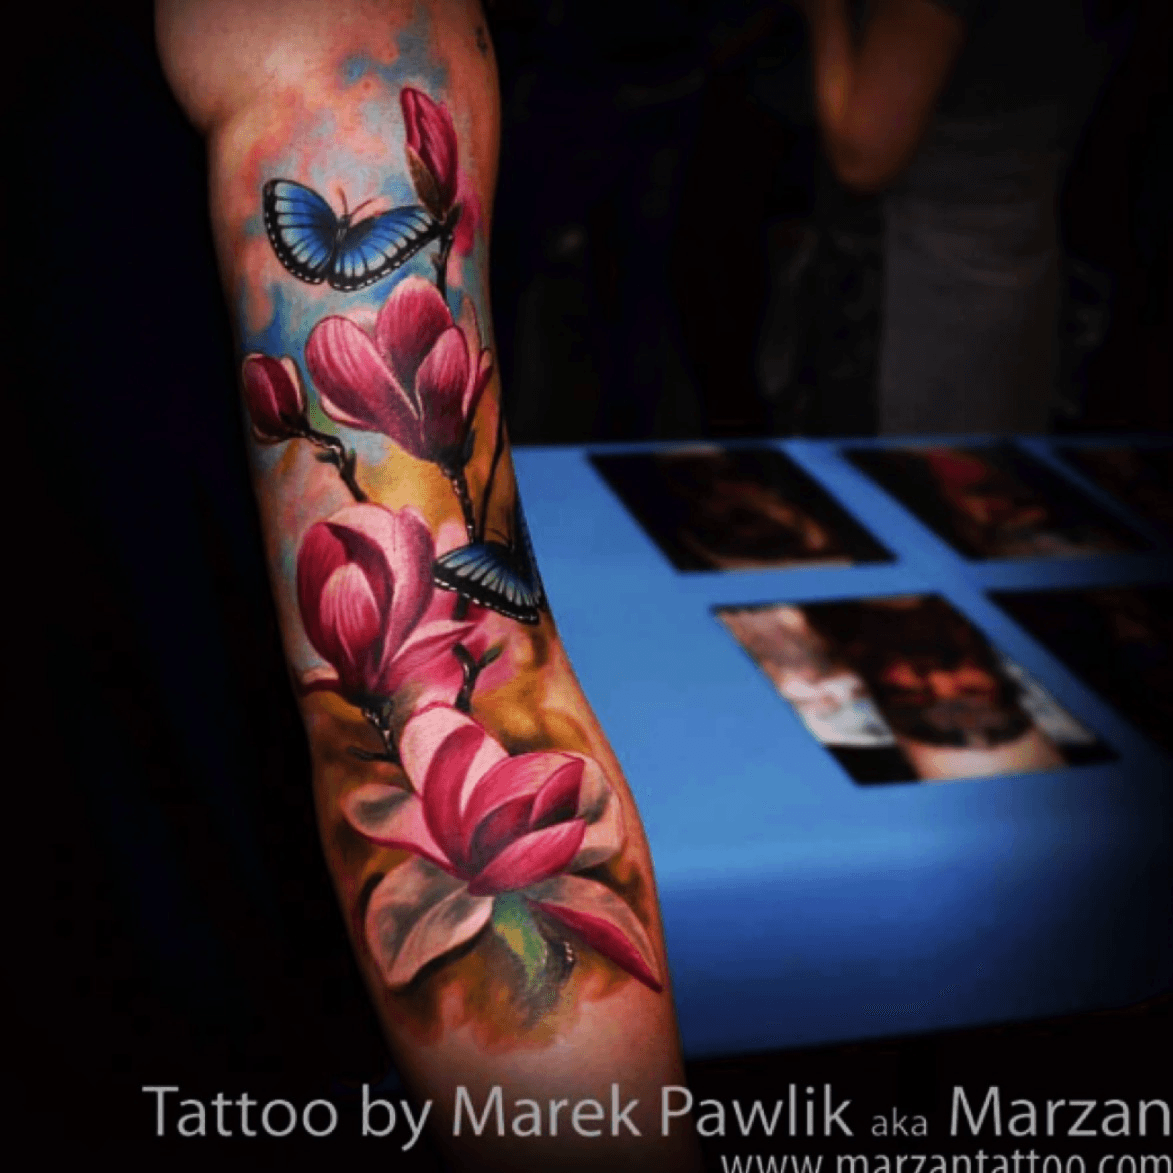 Tattoo uploaded by Tara • #flowers #orchids #butterfly #sleeve • Tattoodo